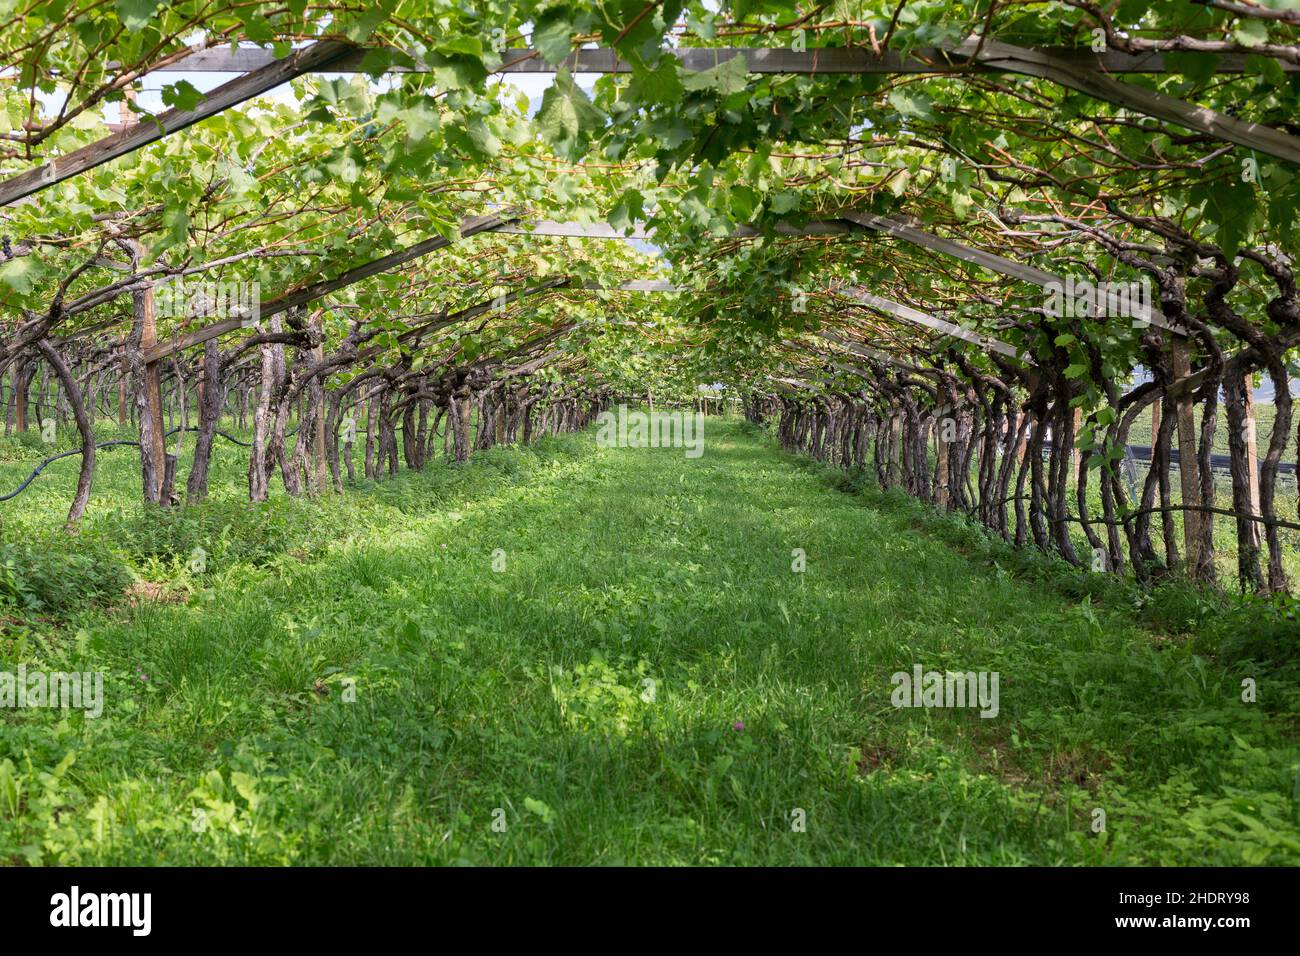 vineyard, vine training, vineyards Stock Photo